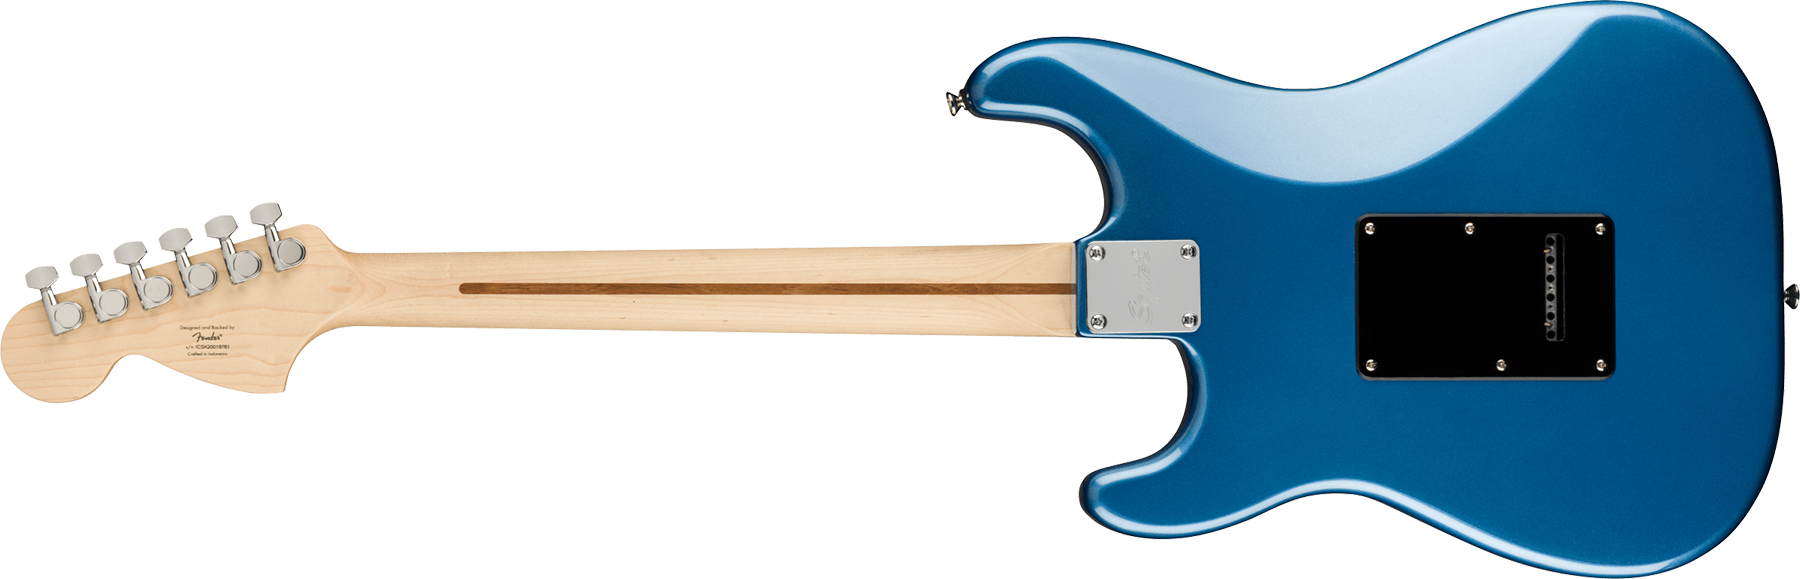 Squier Strat Affinity 2021 Sss Trem Mn - Lake Placid Blue - E-Gitarre in Str-Form - Variation 1